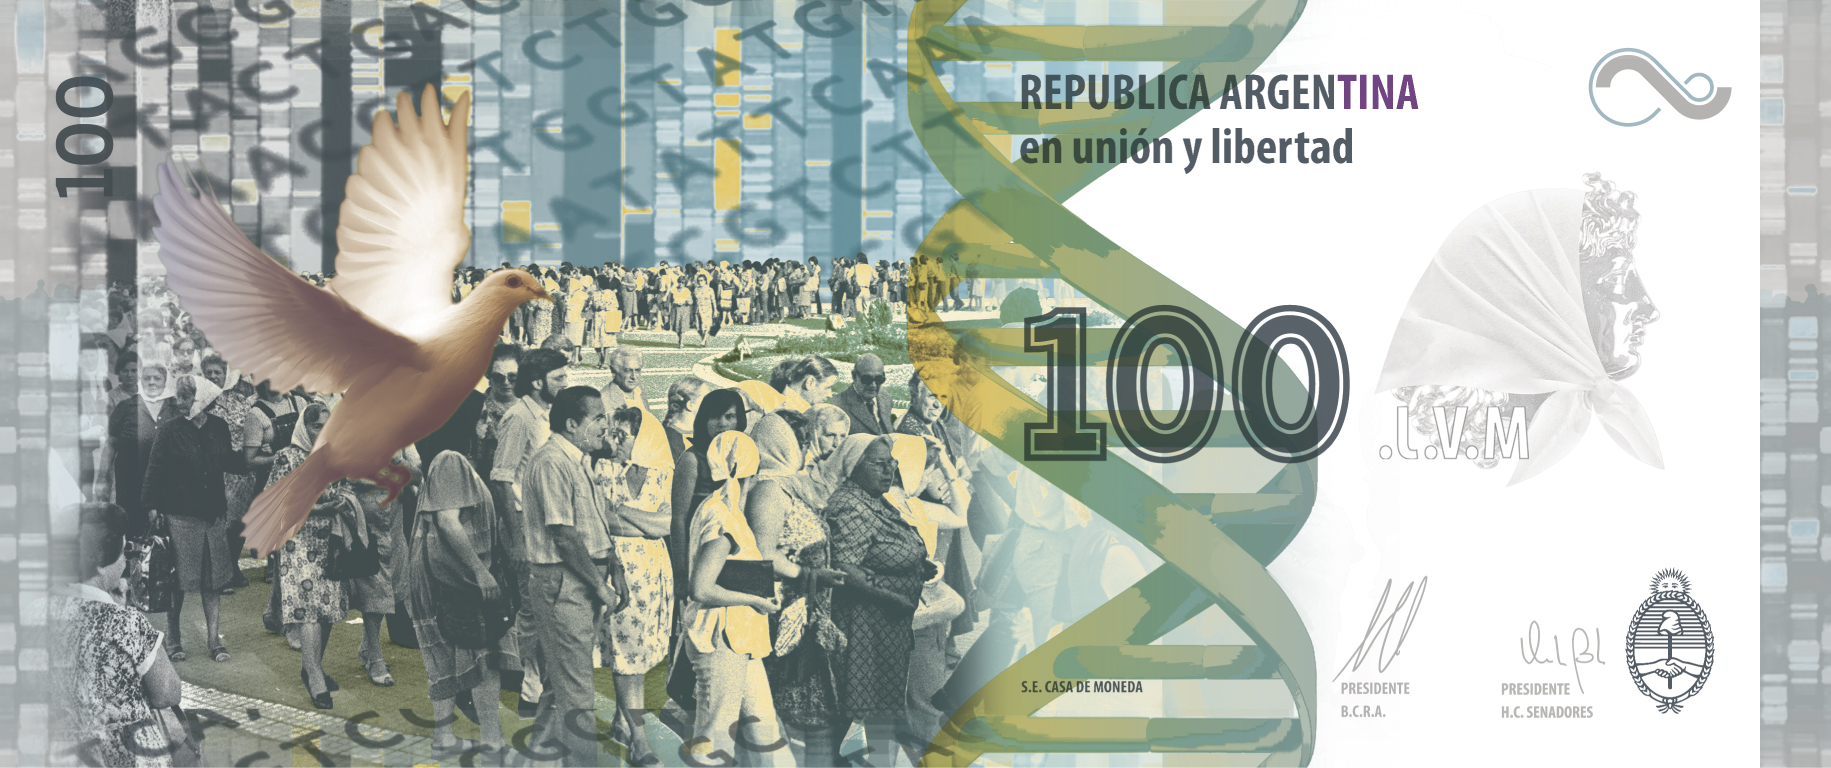 Se emitirá un billete de 100 pesos en homenaje a las Madres y Abuelas de Plaza de Mayo